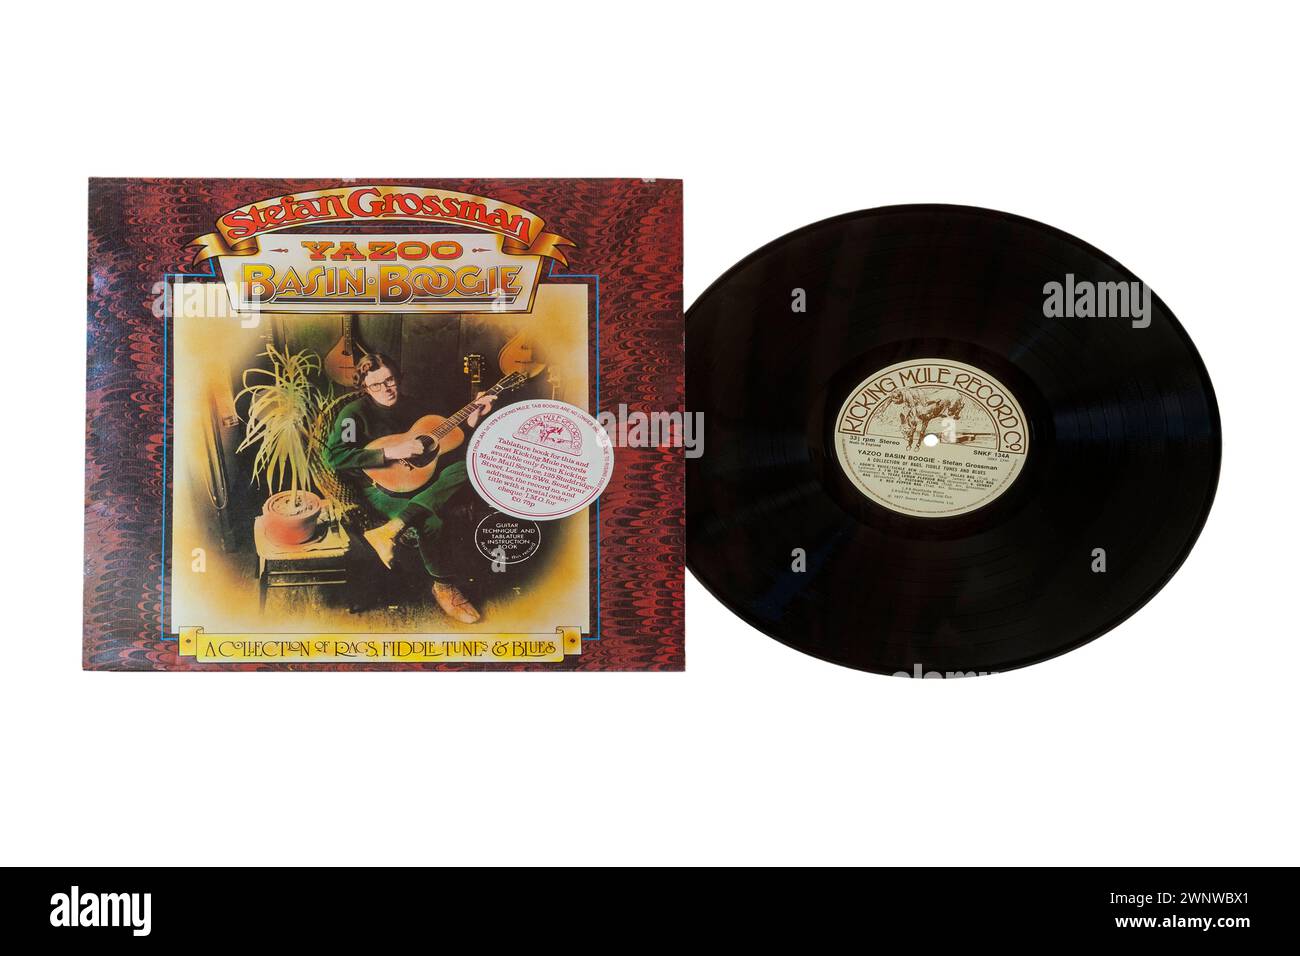 Stefan Grossman Yazoo Basin Boogie album in vinile copertina LP isolata su sfondo bianco - 1977 - una raccolta di stracci, melodie e blues Foto Stock